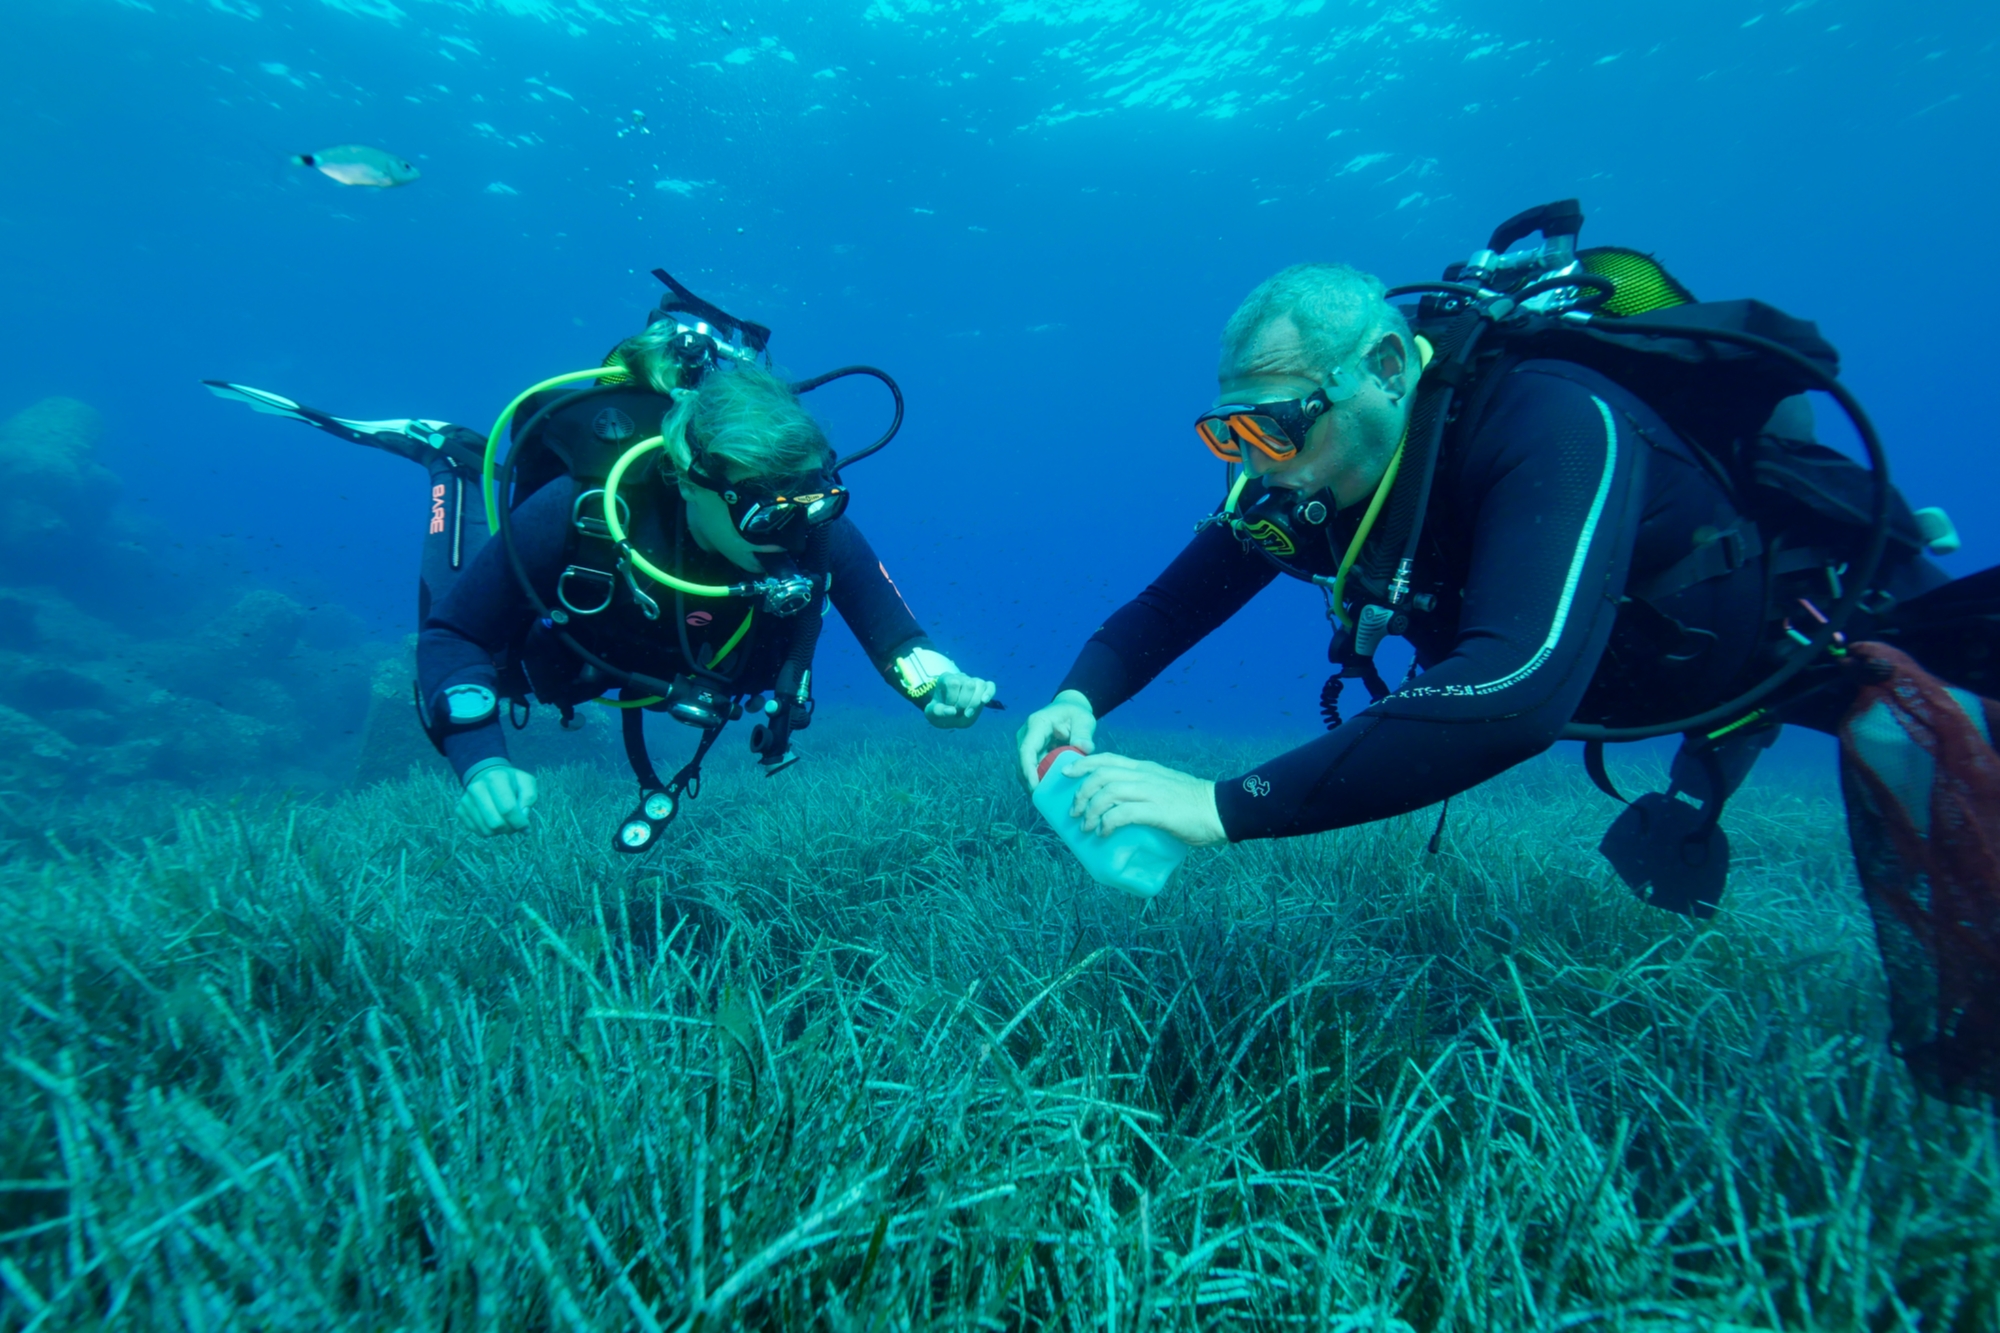 Taucher sammeln Blätter des Neptungrases (Posidonia oceanica) in der Bucht von Calvi auf Korsika.